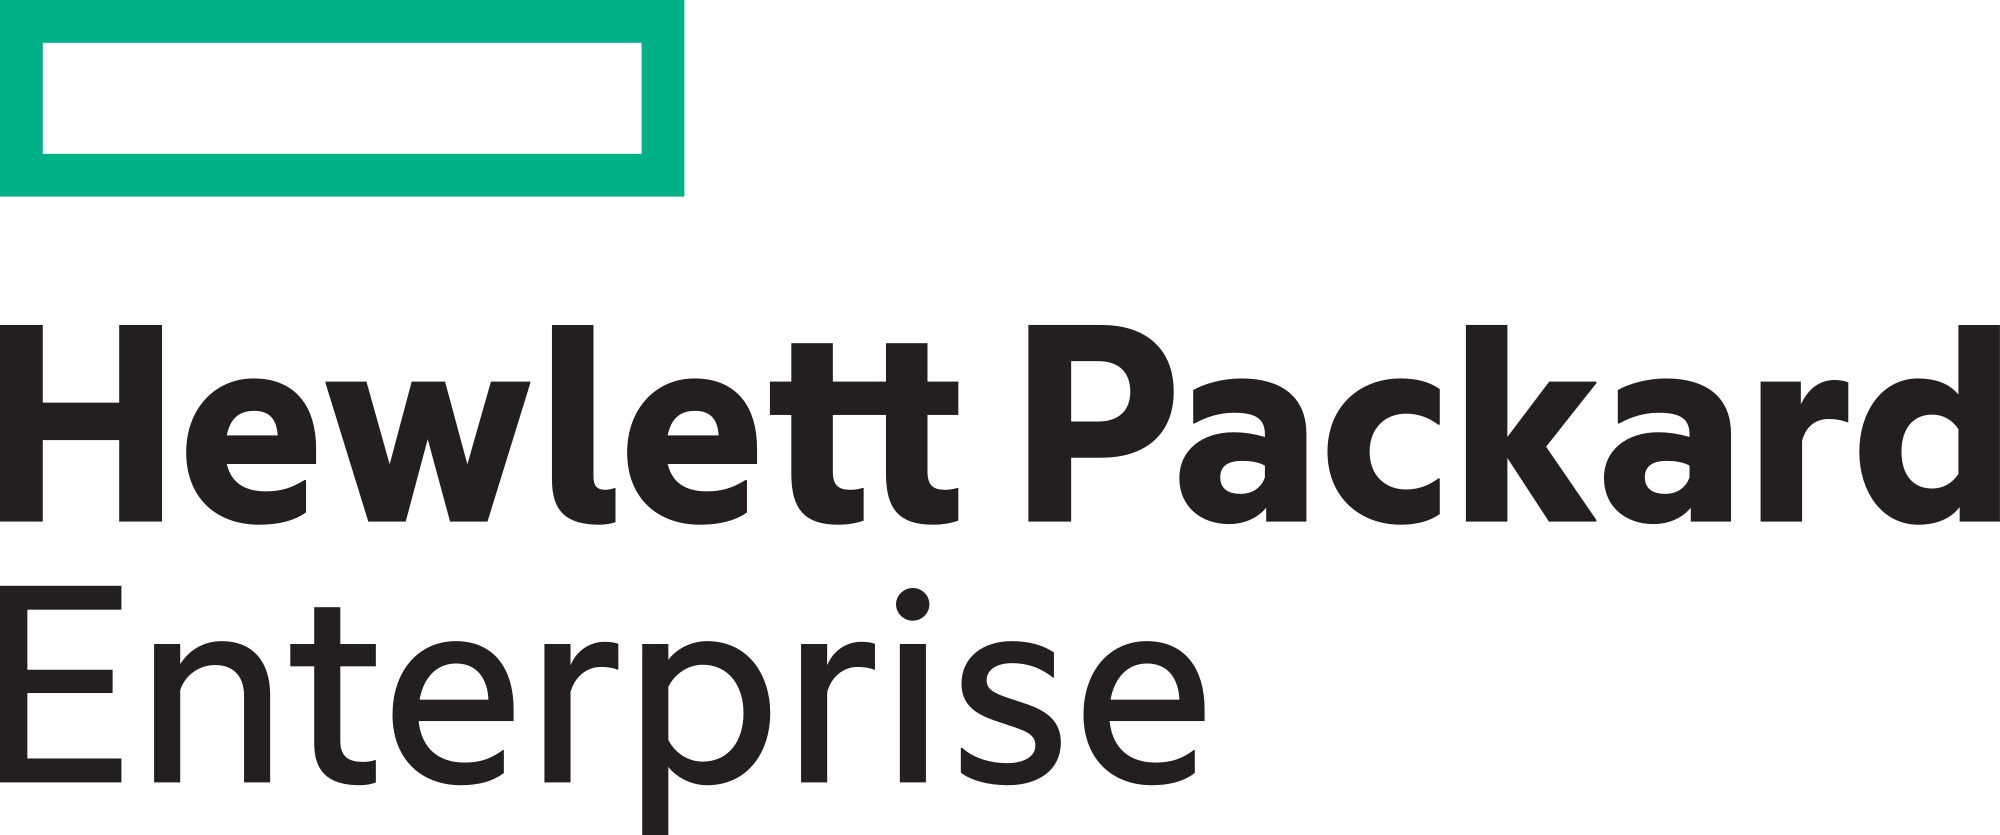 2000px-Hewlett_Packard_Enterprise_logo.svg.png